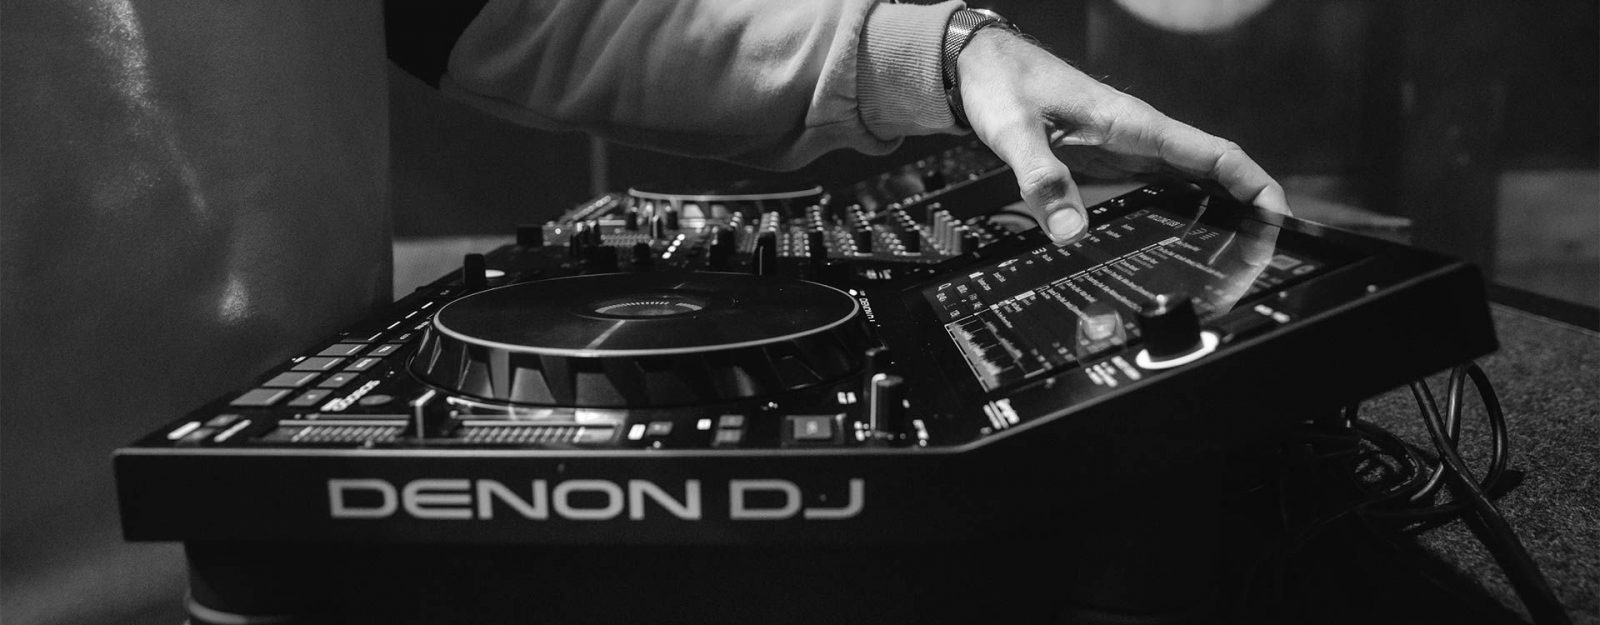 DENON DJの真骨頂SC600 Primeに3万円以上お買い得な箱ダメージアウトレットがございます！USBでDJする方、DENON DJを